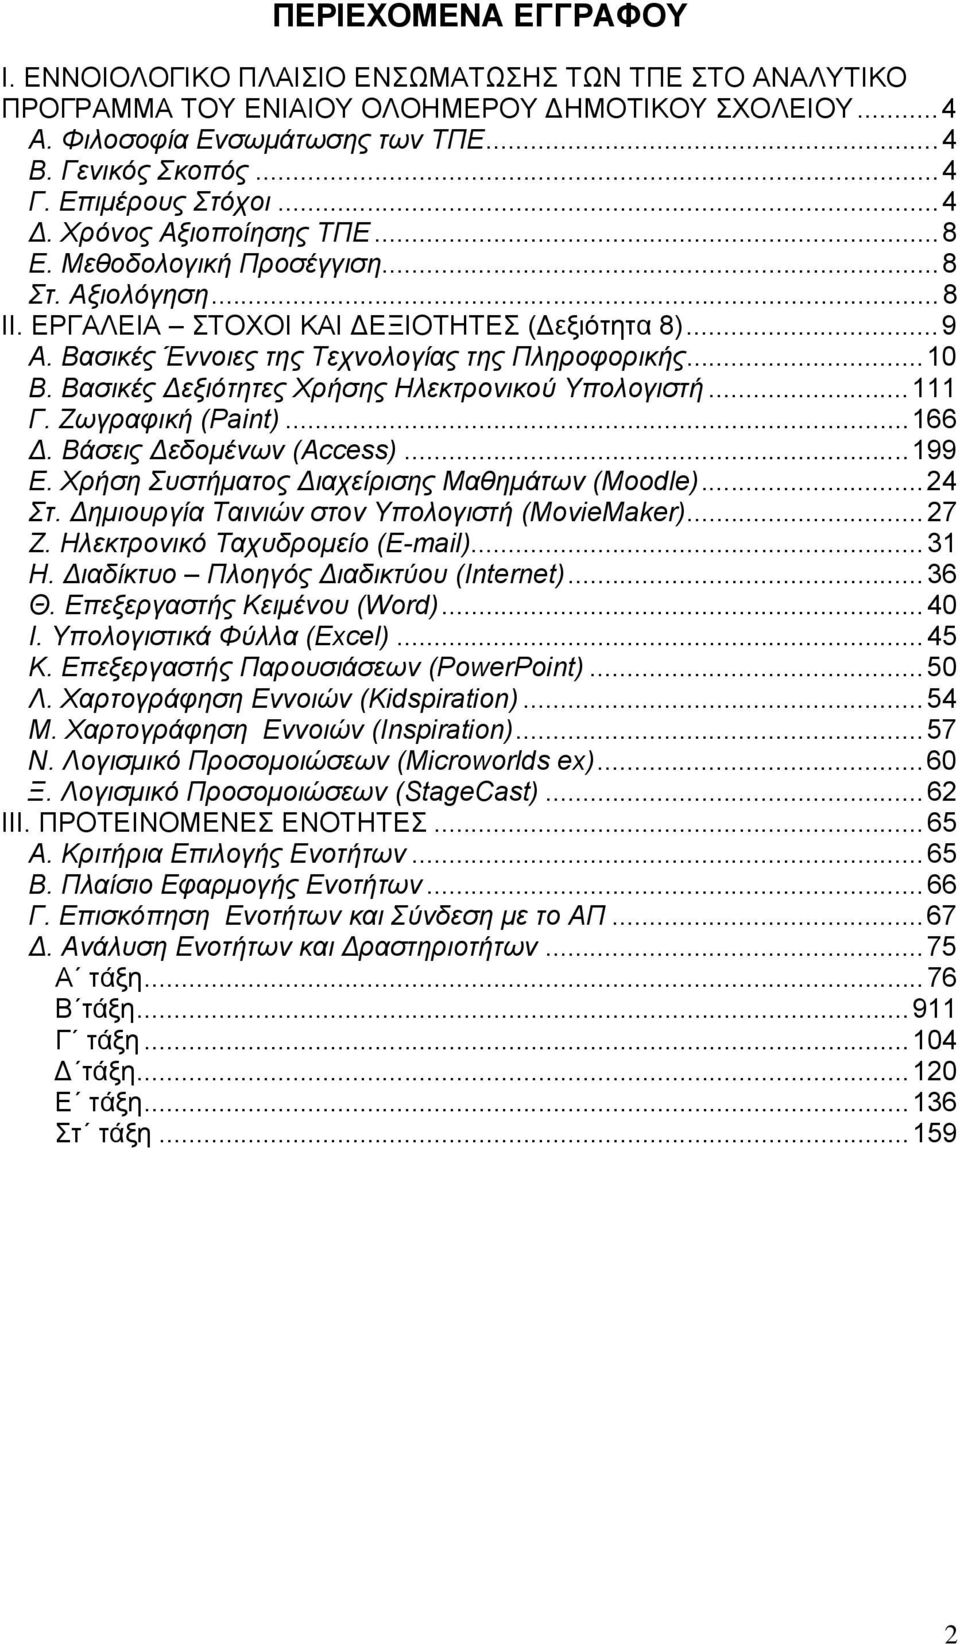 Βασικές Έννοιες της Τεχνολογίας της Πληροφορικής...10 Β. Βασικές Δεξιότητες Χρήσης Ηλεκτρονικού Υπολογιστή...111 Γ. Ζωγραφική (Paint)...166 Δ. Βάσεις Δεδομένων (Αccess)...199 E.